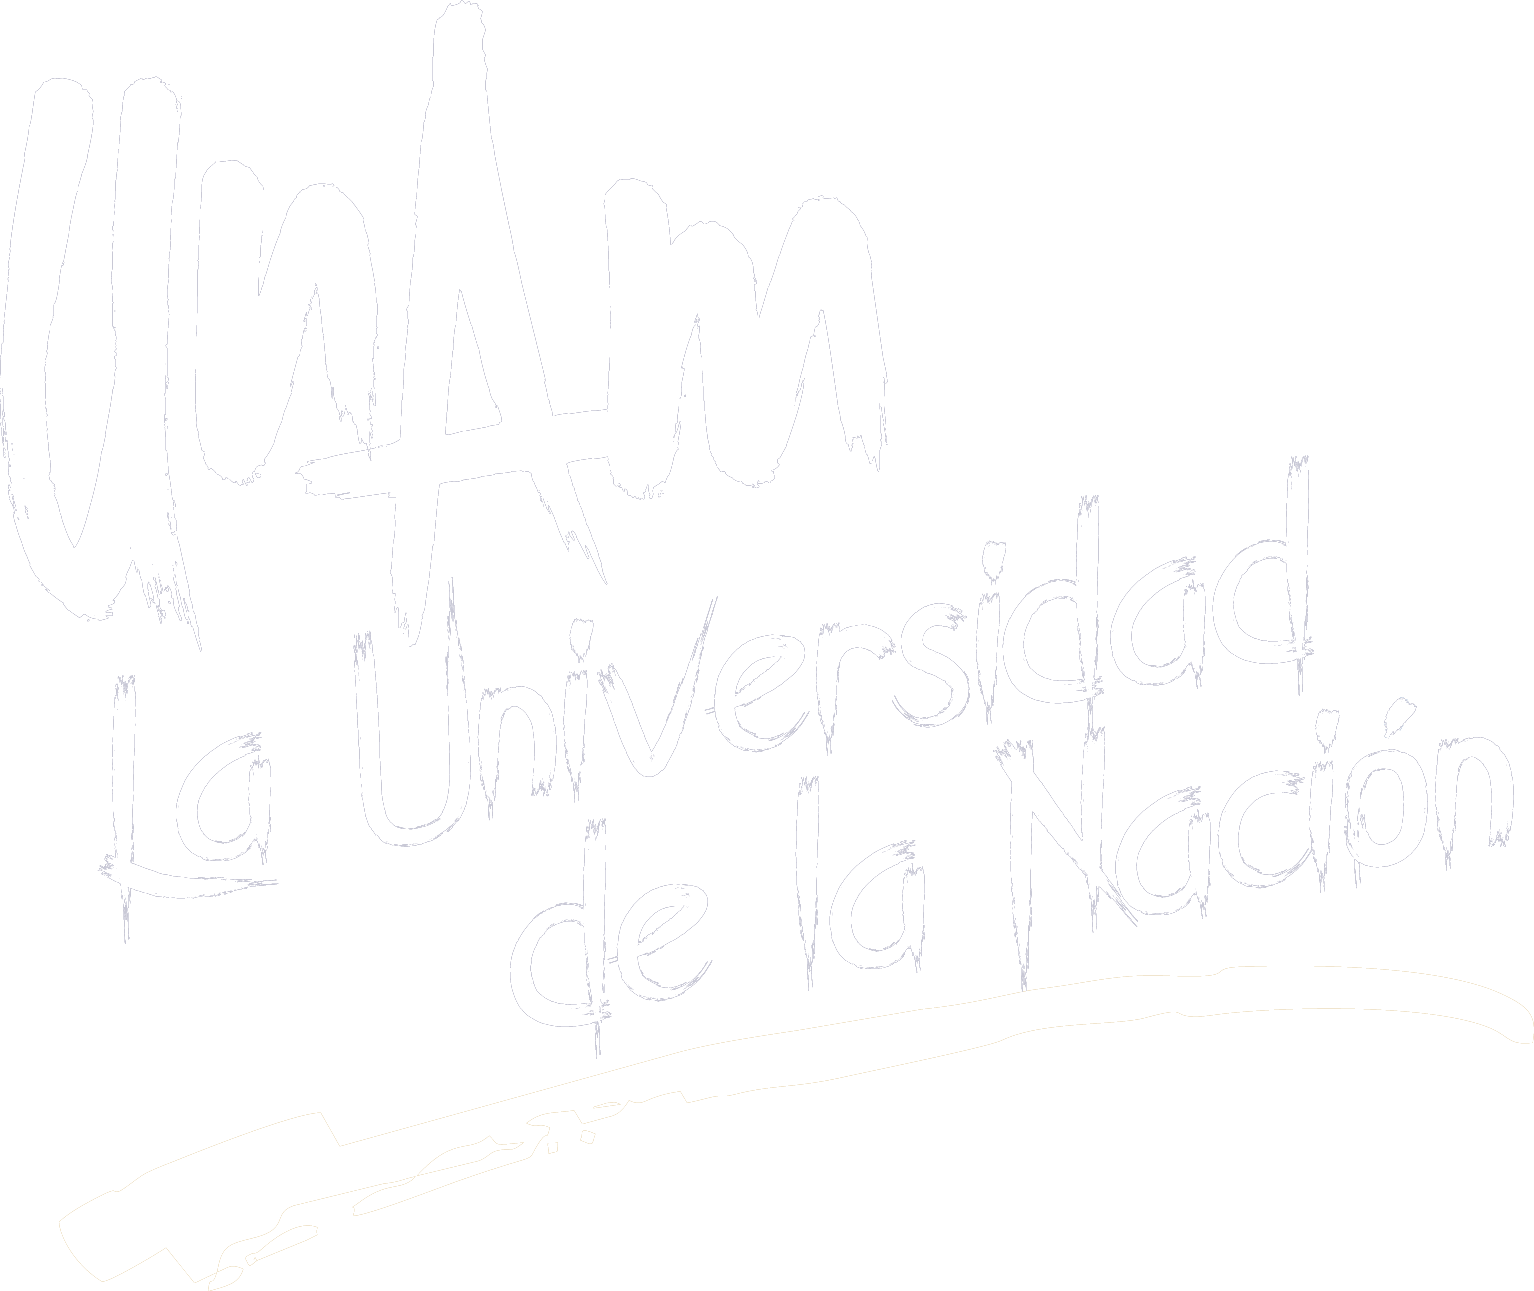 UNAM, la universidad de la nación